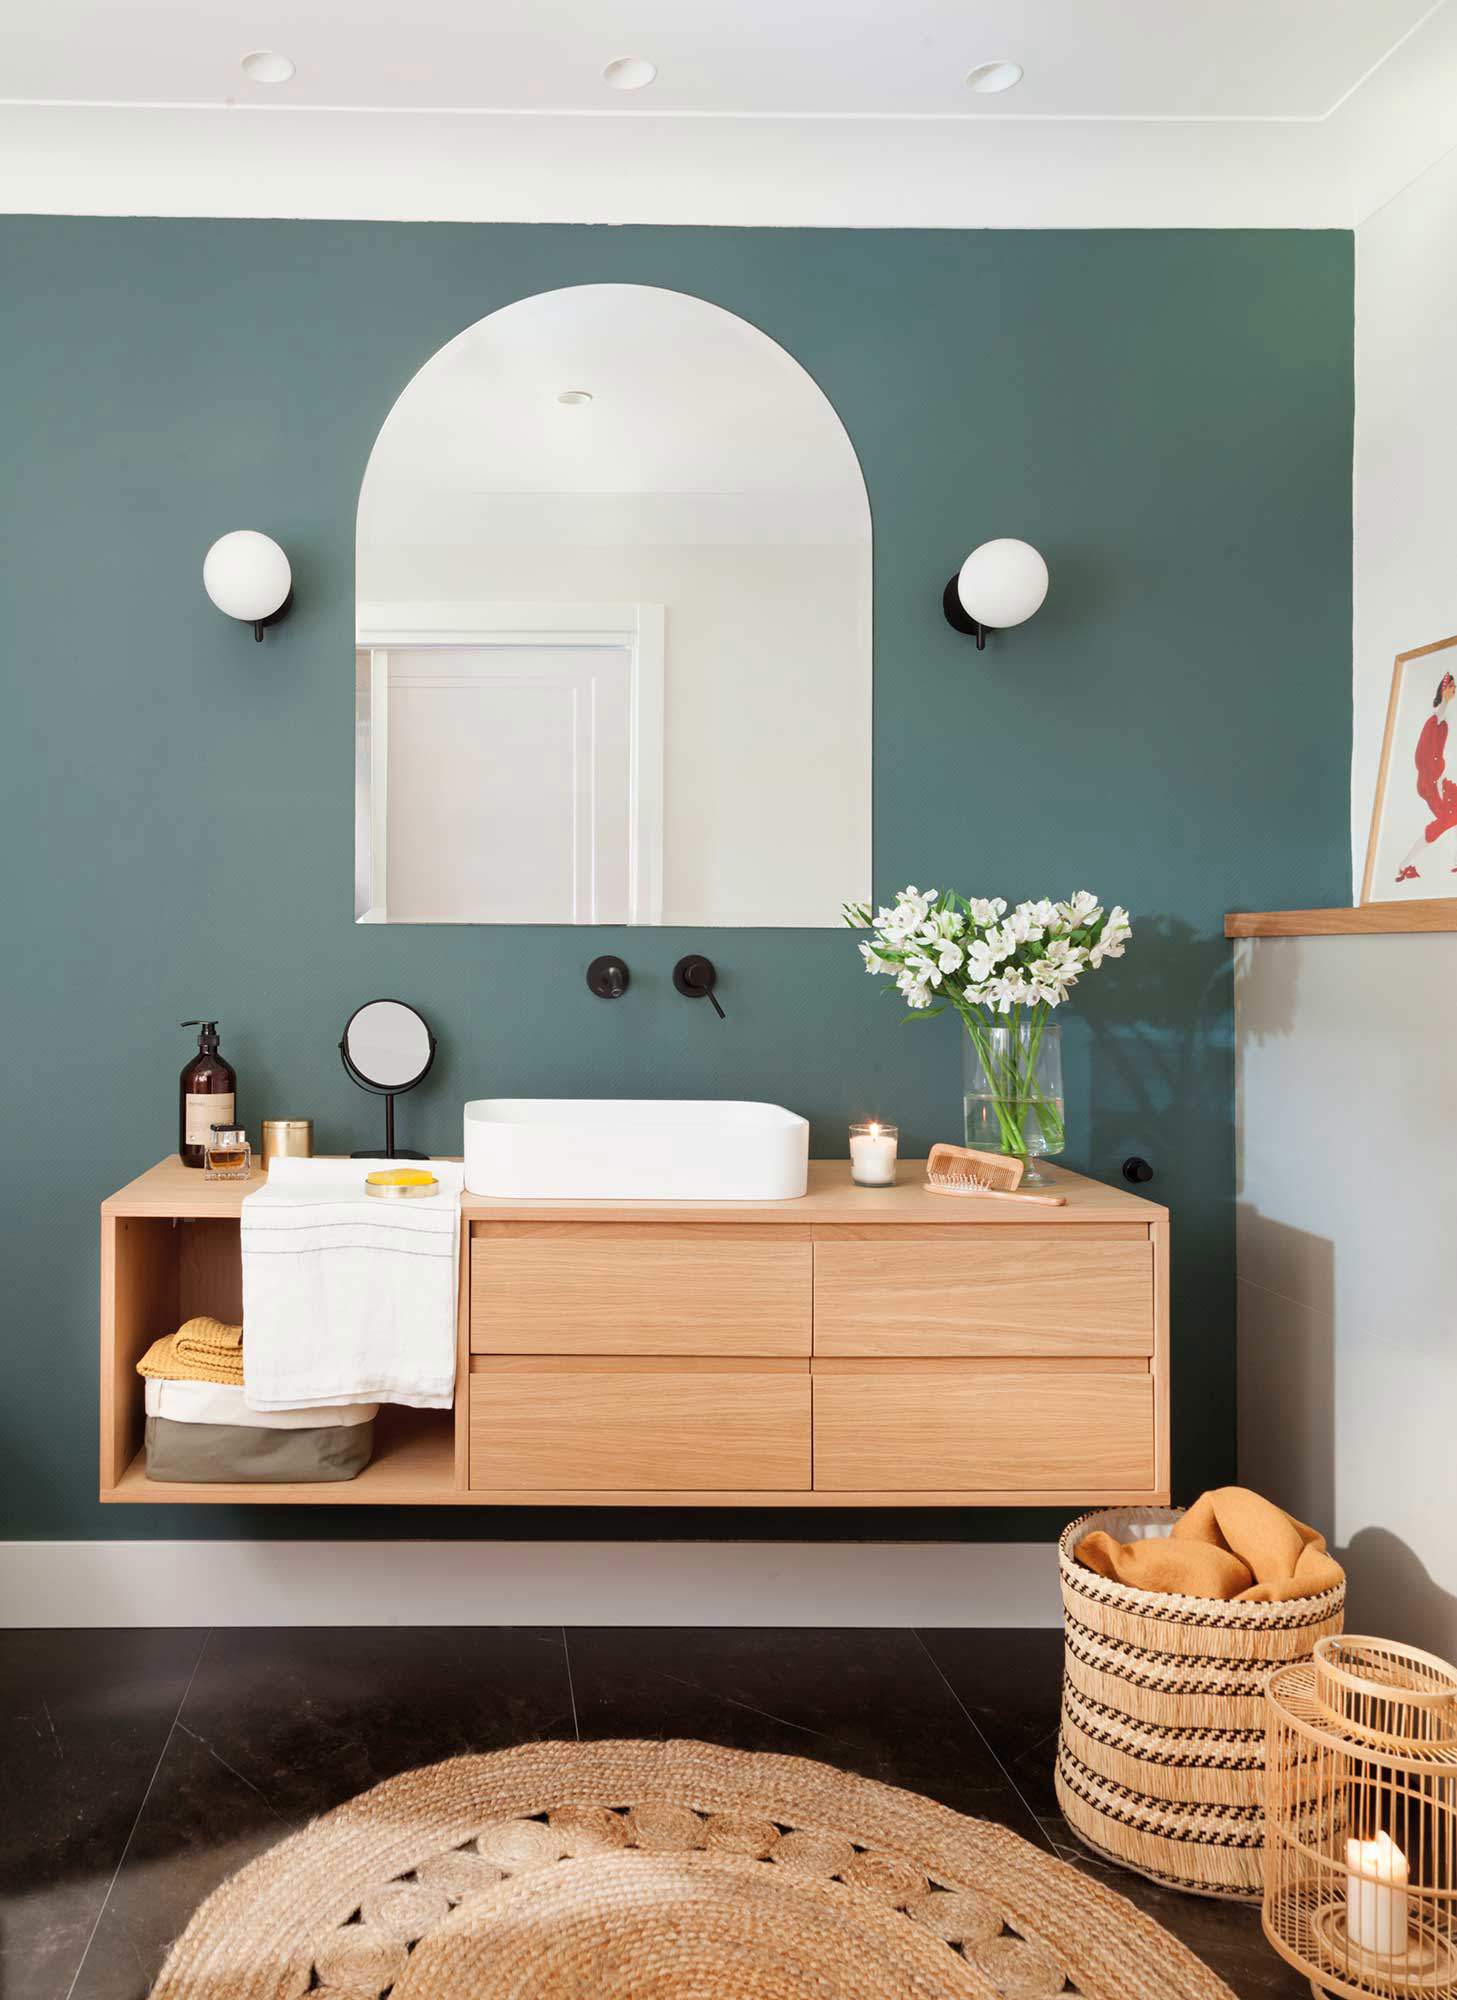 Baño con mueble volado de madera, espejo tipo ventana sin marco y apliques globo